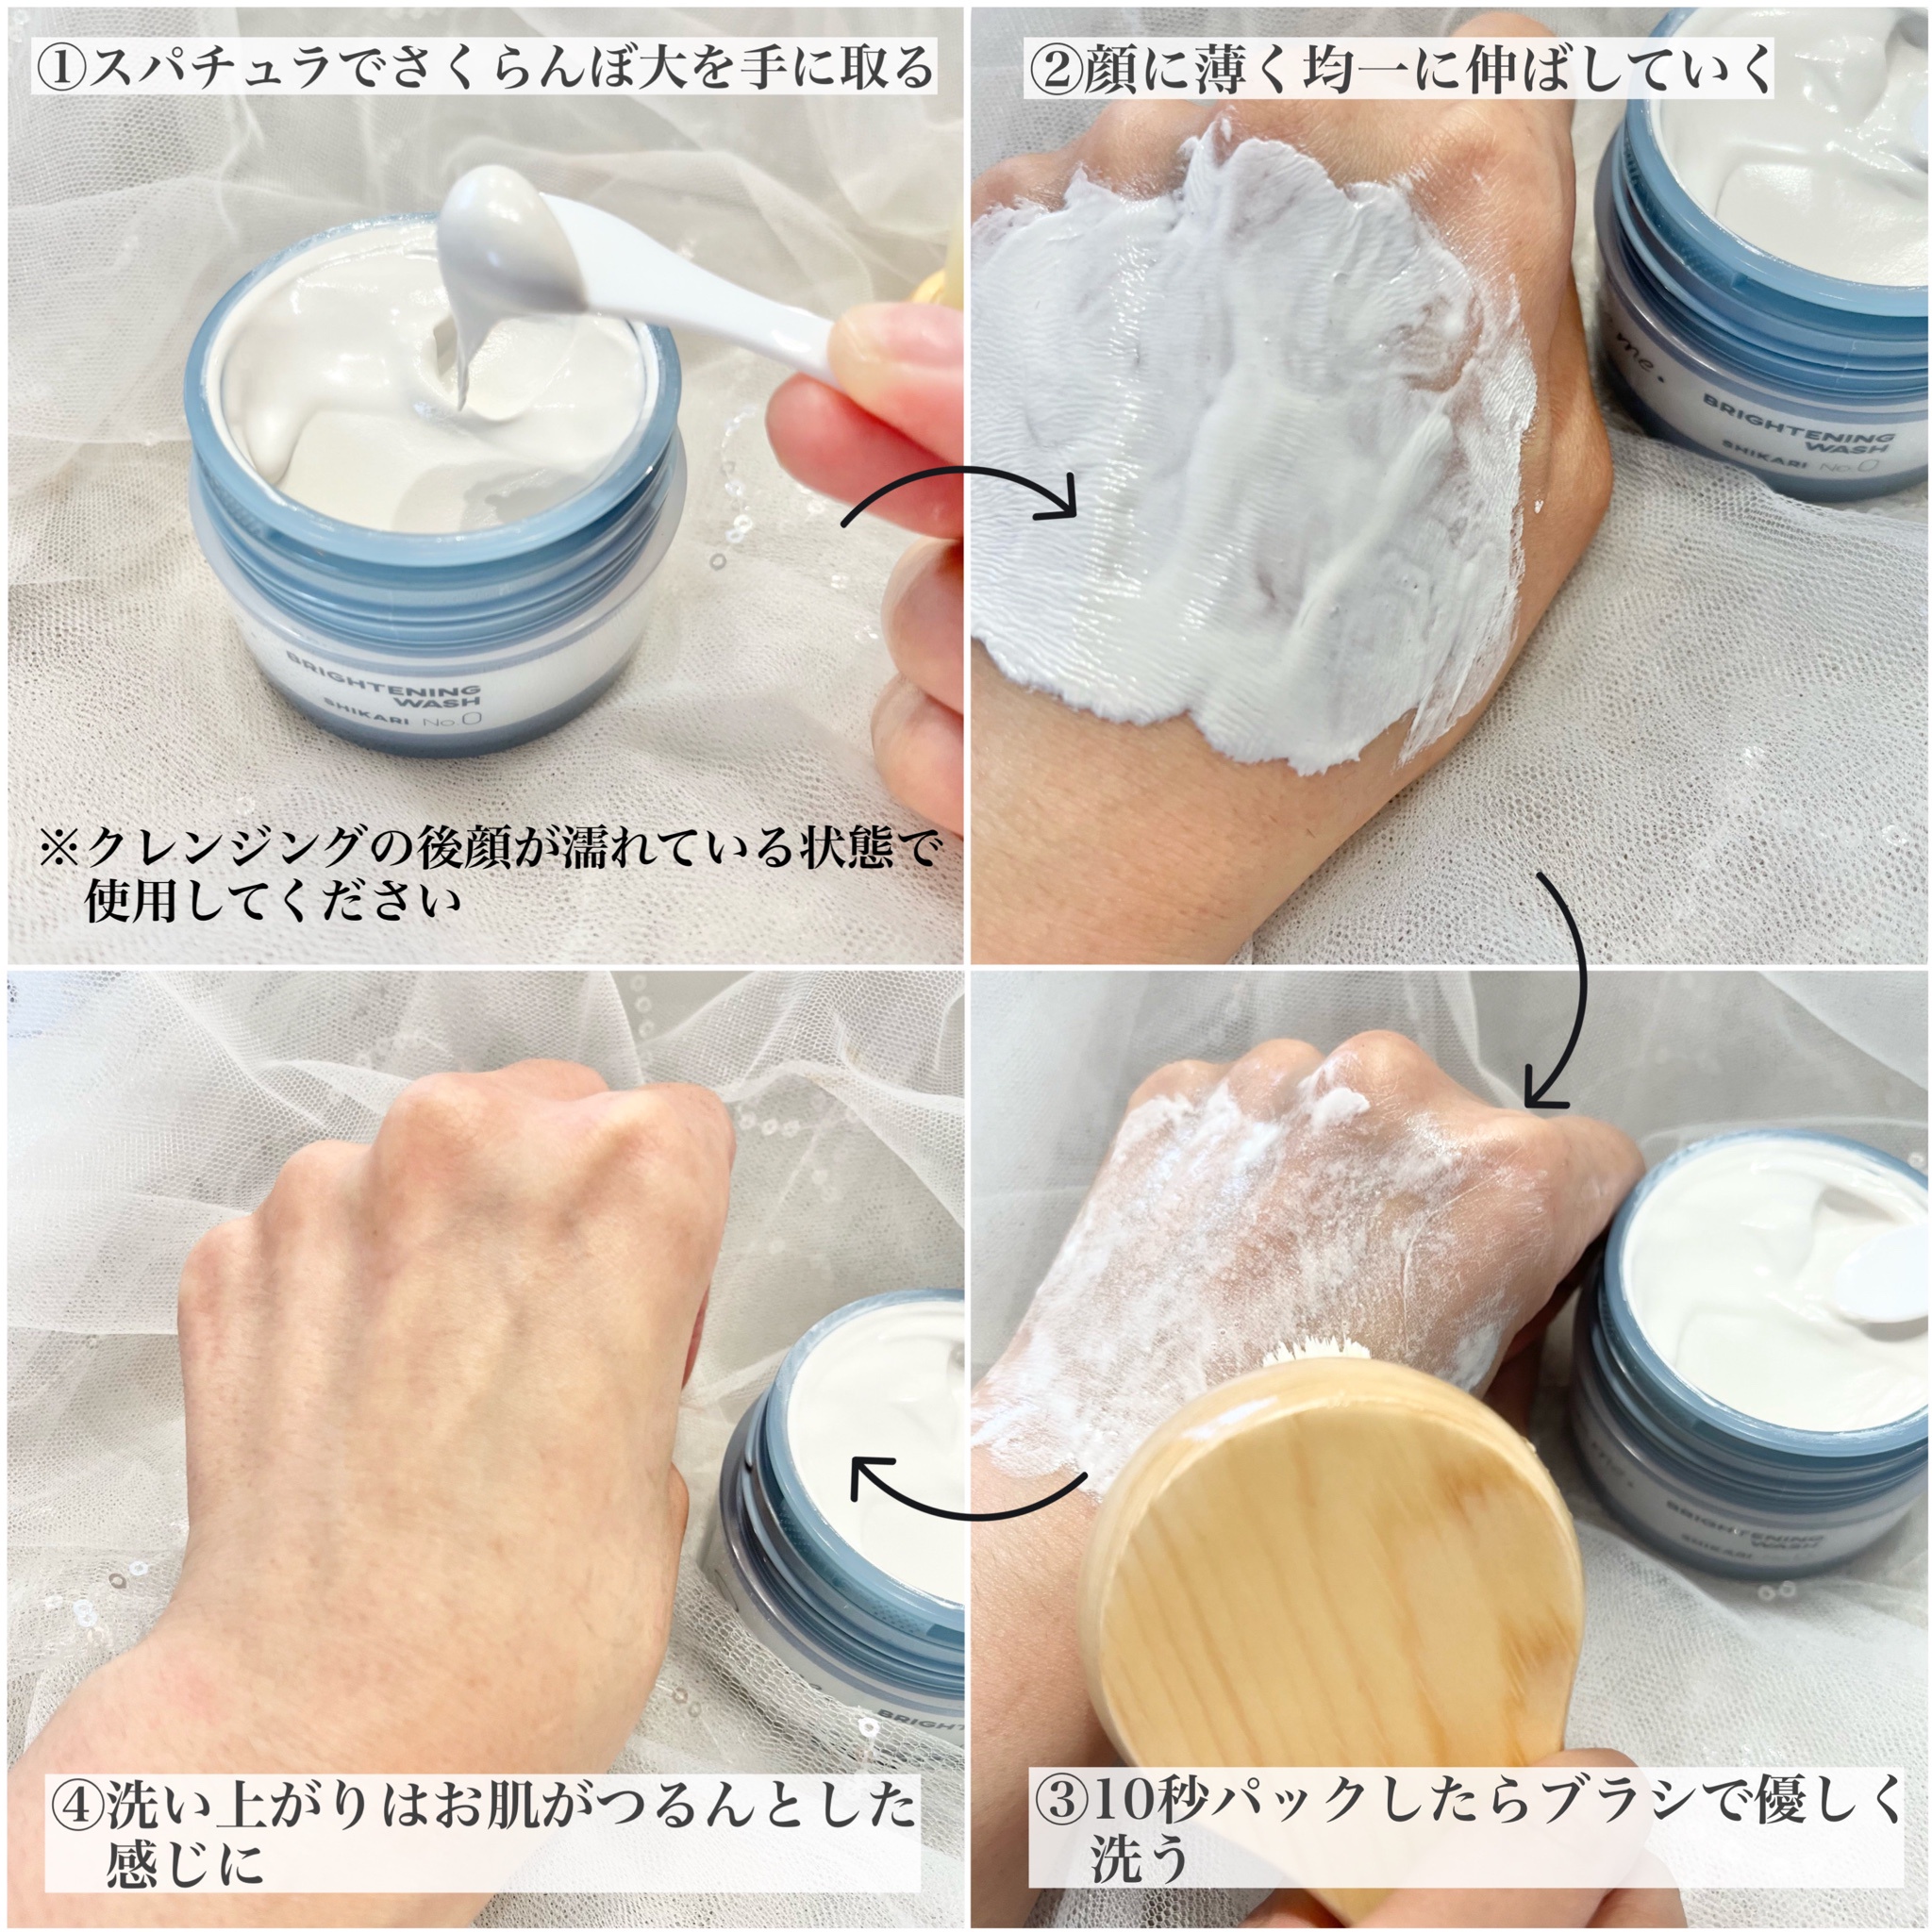 シカリ 洗顔 ブラシ付き SHIKARI 洗顔 スパチュラ - 基礎化粧品